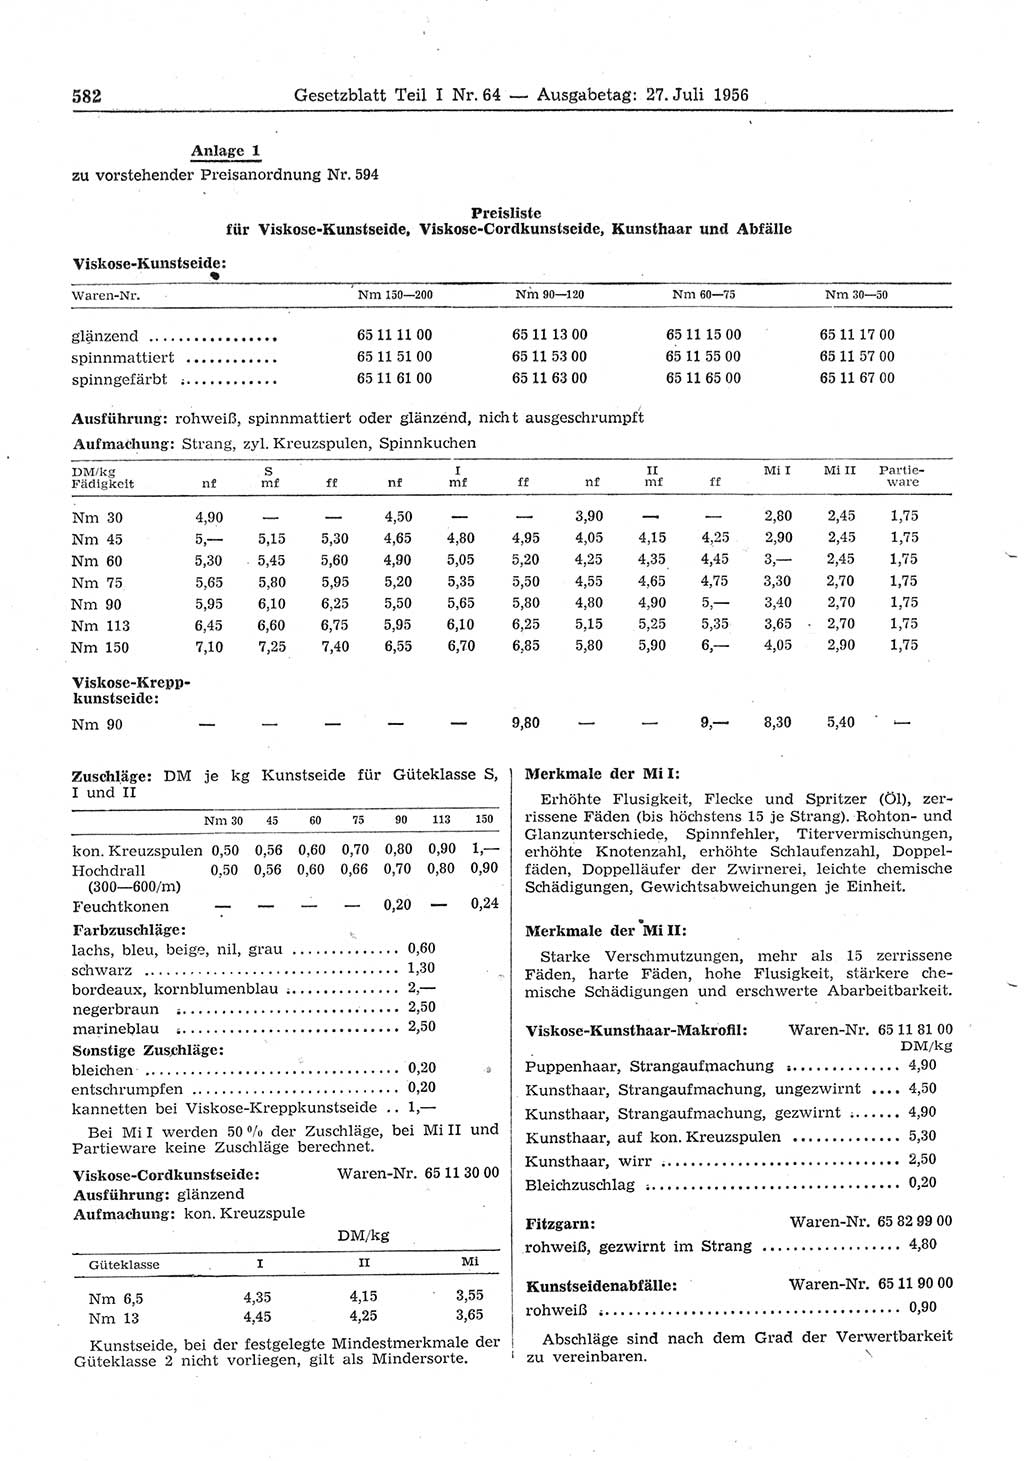 Gesetzblatt (GBl.) der Deutschen Demokratischen Republik (DDR) Teil Ⅰ 1956, Seite 582 (GBl. DDR Ⅰ 1956, S. 582)